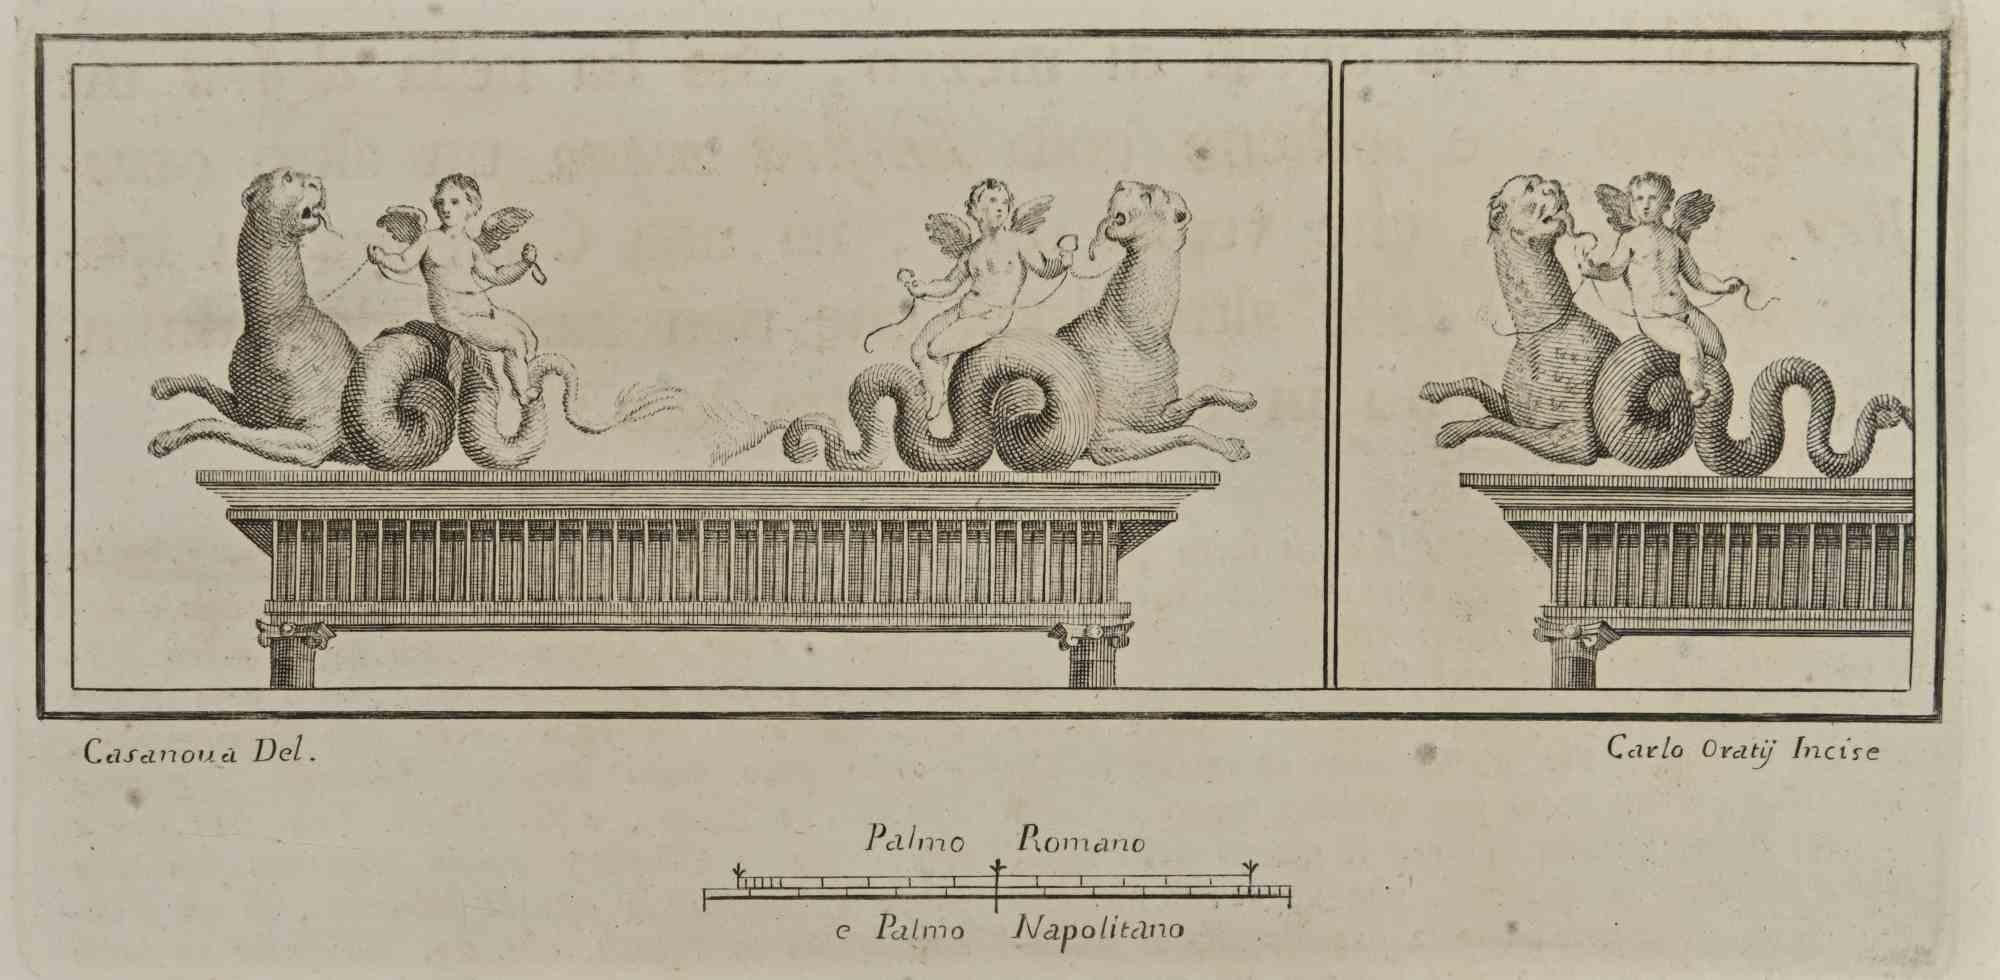 Amor reitet auf Meerestieren aus den "Altertümern von Herculaneum" ist eine Radierung auf Papier von Carlo Oraty aus dem 18. Jahrhundert.

Signiert auf der Platte.

Gute Bedingungen.

Die Radierung gehört zu der Druckserie "Antiquities of